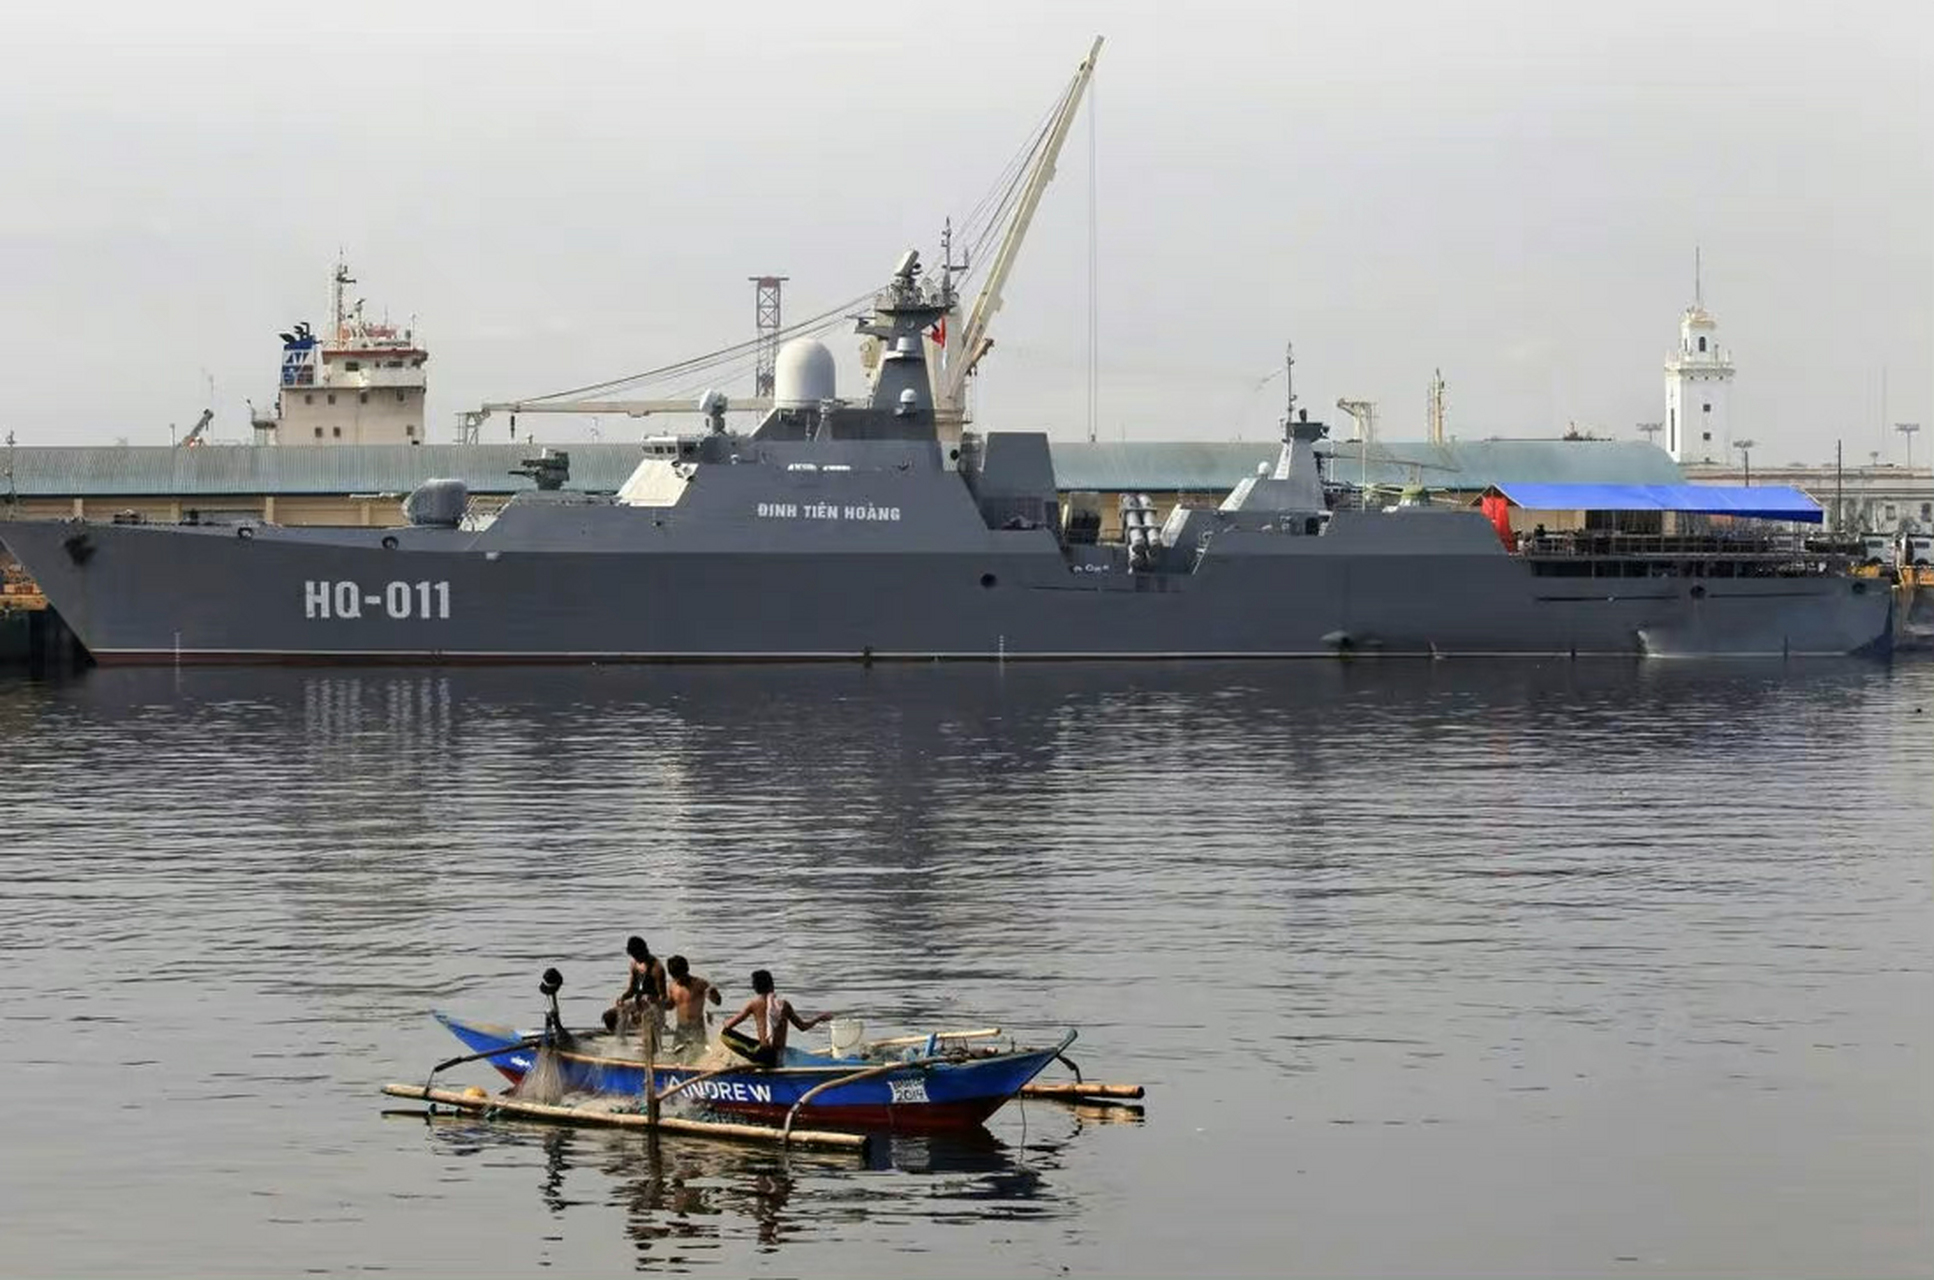 越南海军的猎豹级轻型导弹护卫舰是开放式机库,2019年海军节期间,发现